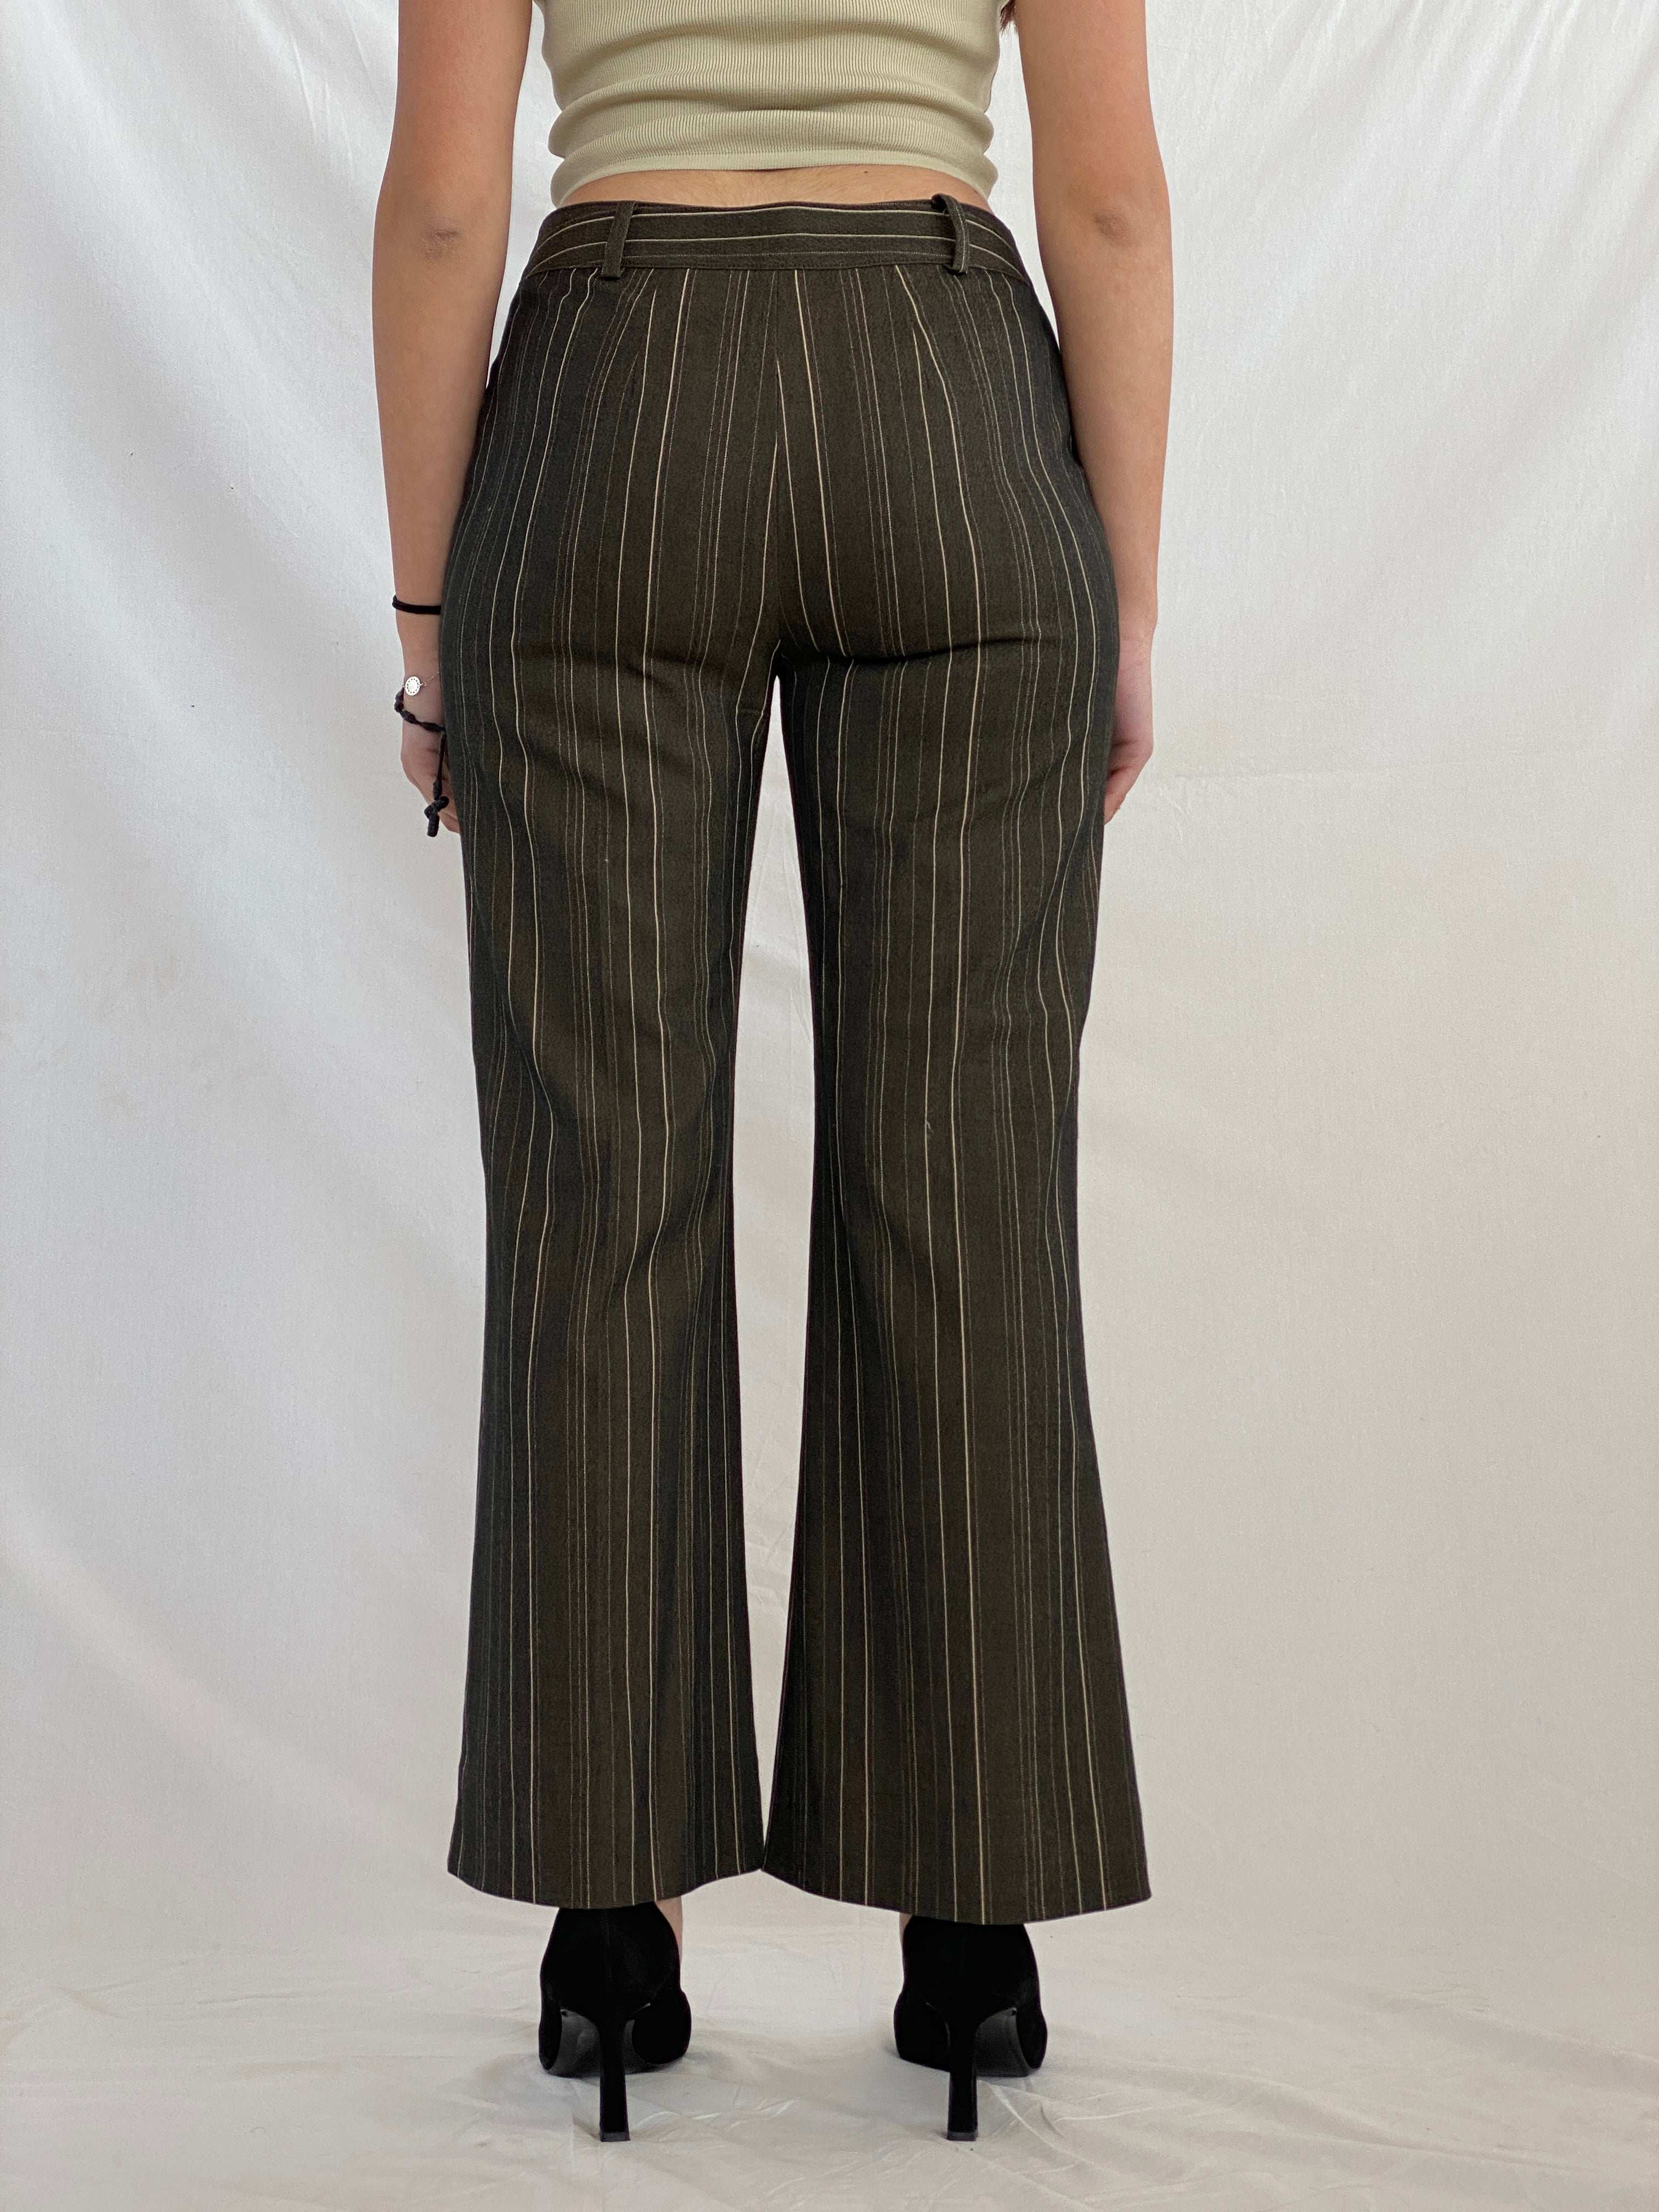 IPEKYOL Office Striped Pants - Balagan Vintage Pants 00s, Juana, NEW IN, pants, striped pants, women pants